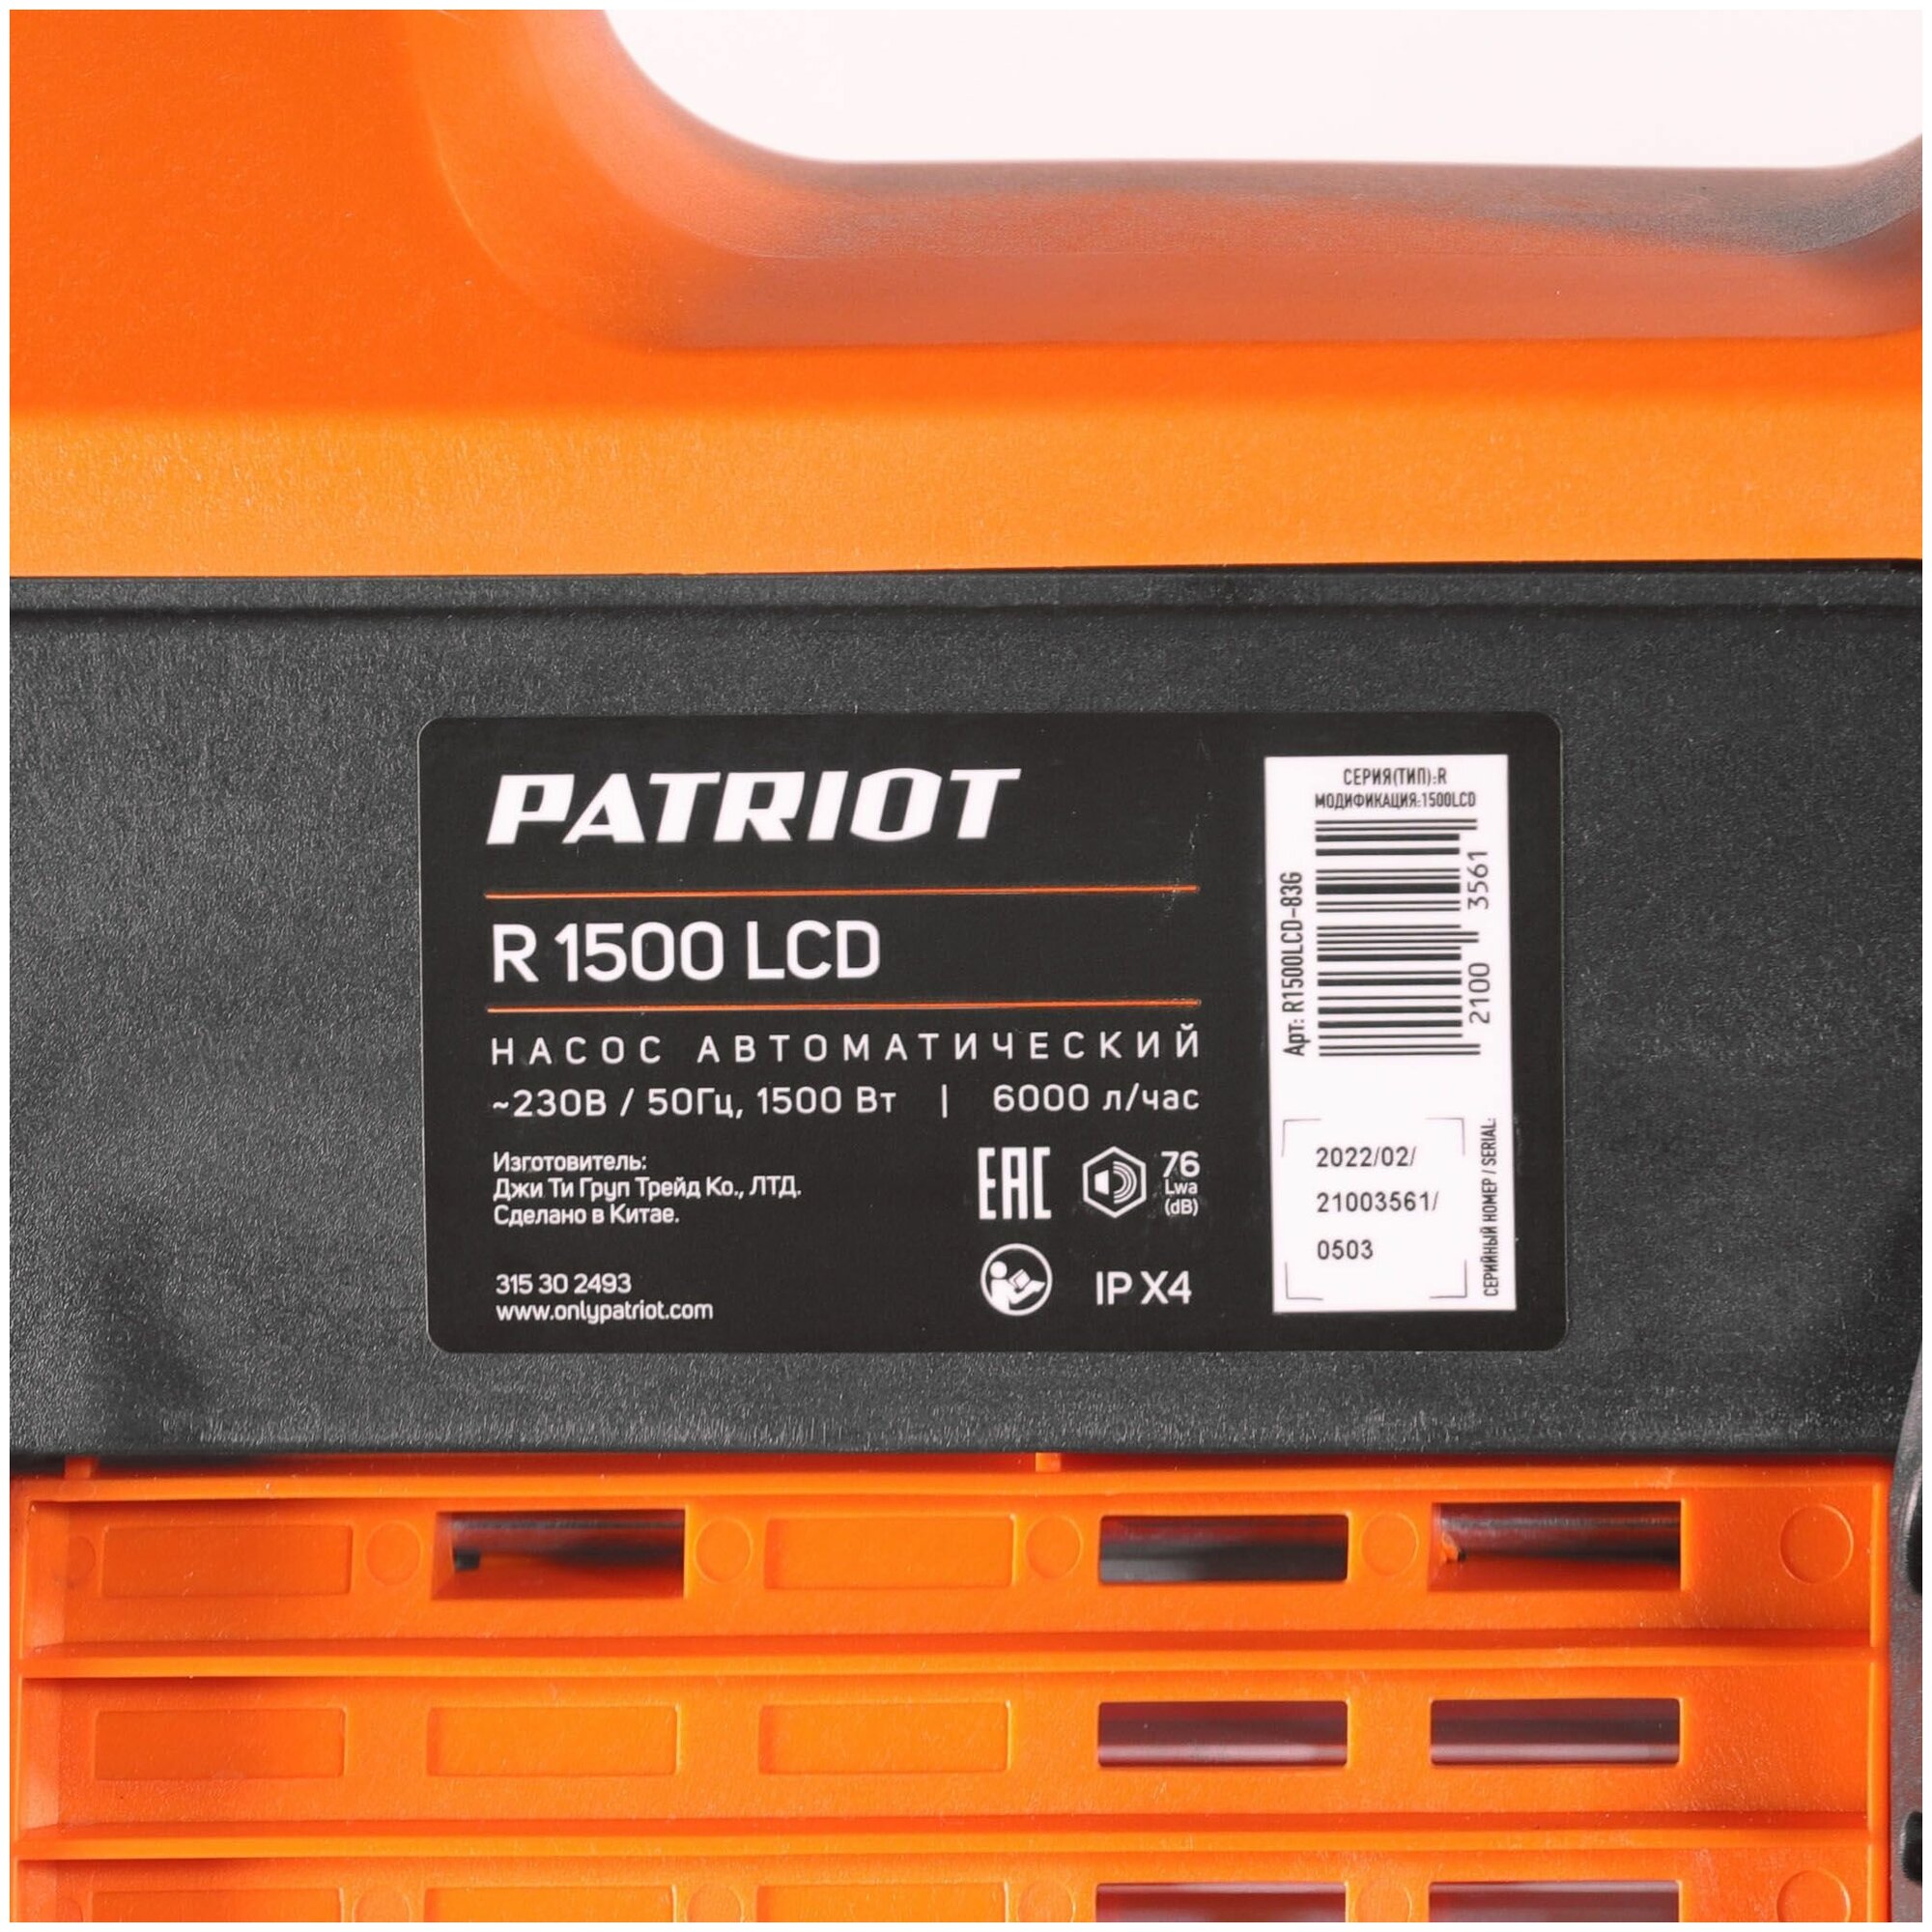 Садовый насос Patriot R 1500 LCD (315302493) - фото №5